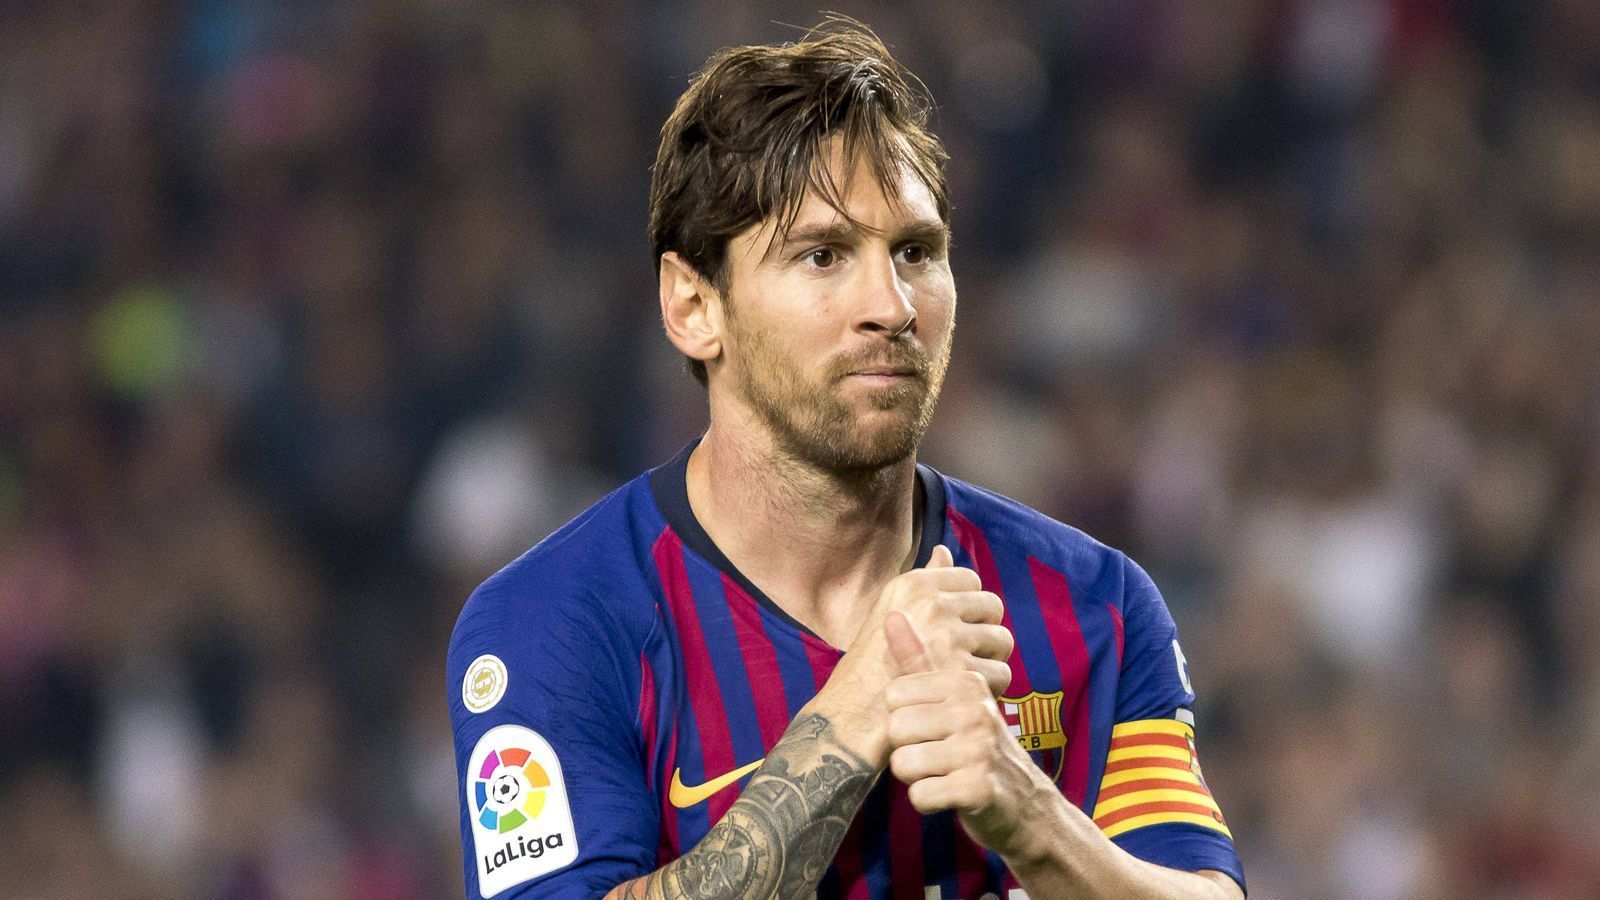 
                <strong>Lionel Messi (FC Barcelona)</strong><br>
                Die Enthüllungs-Plattform "Football Leaks" hat das Gehalt von Lionel Messi offengelegt! Aufgrund von zwei Verträgen die er 2017 unterzeichnete, kassiert er angeblich doppelt. Zum einen verdient Barca-Star Messi demnach durch seinen Arbeitsvertrag jährlich 71.053.846 Euro. Hinzu kommen einmalige Bonuszahlungen in Höhe von 63,5 Millionen Euro für die Verwertung von Messis Persönlichkeitsrechten, sowie ein "Treue-Bonus" von 70 Millionen Euro. Für einen Sieg in der Champions League stünden dem Argentinier wohl 12.057.513 Euro zu. Je nach Einsatz-Anzahl, könnte Messi bis zum Vertragsende auf ein durchschnittliches Jahresgehalt von 106.347.115 Euro kommen. Sollte Barca das Triple holen und Messi Weltfußballer werden, würde das Jahreseinkommen sogar auf 122.515.205 Euro ansteigen.
              